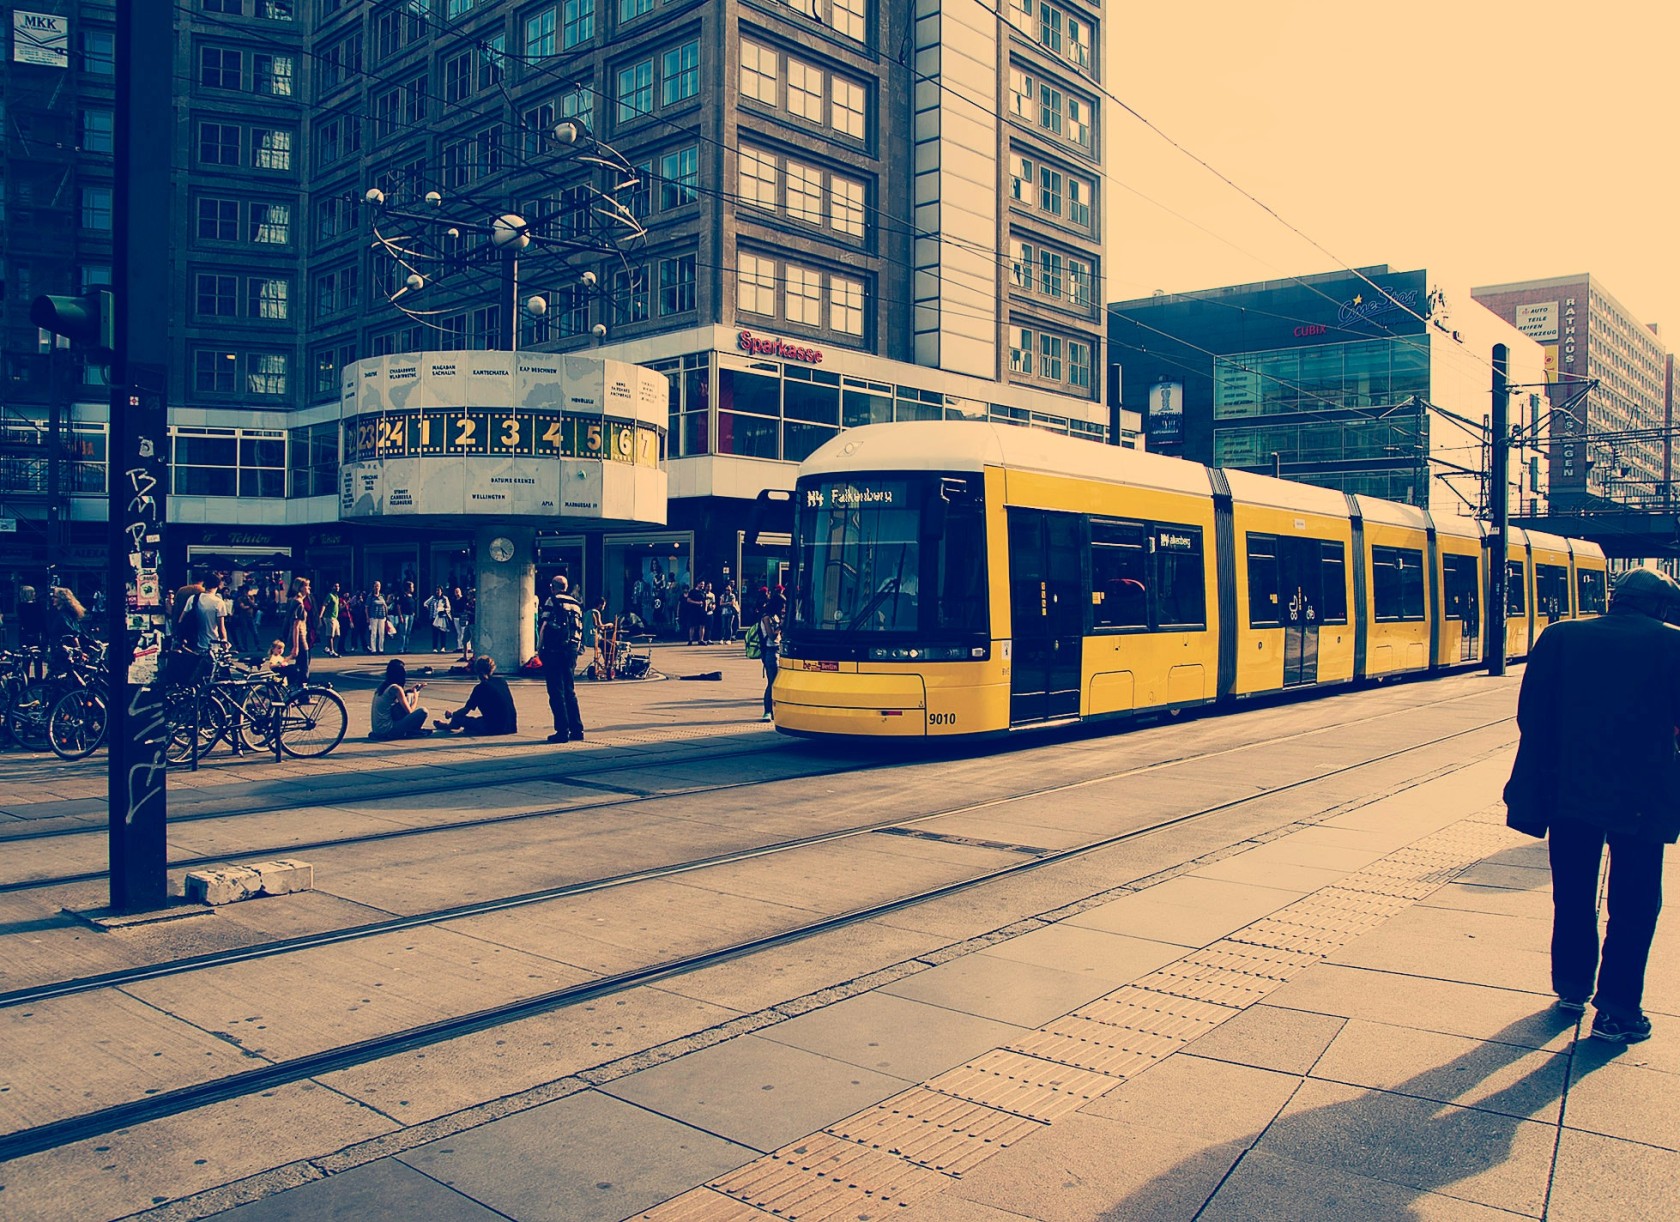 Descripción de la imagen: Paisaje urbano en la ciudad de Berlín en el que aparece un tranvía con varios edificios de fondo y algunas personas en la calle.